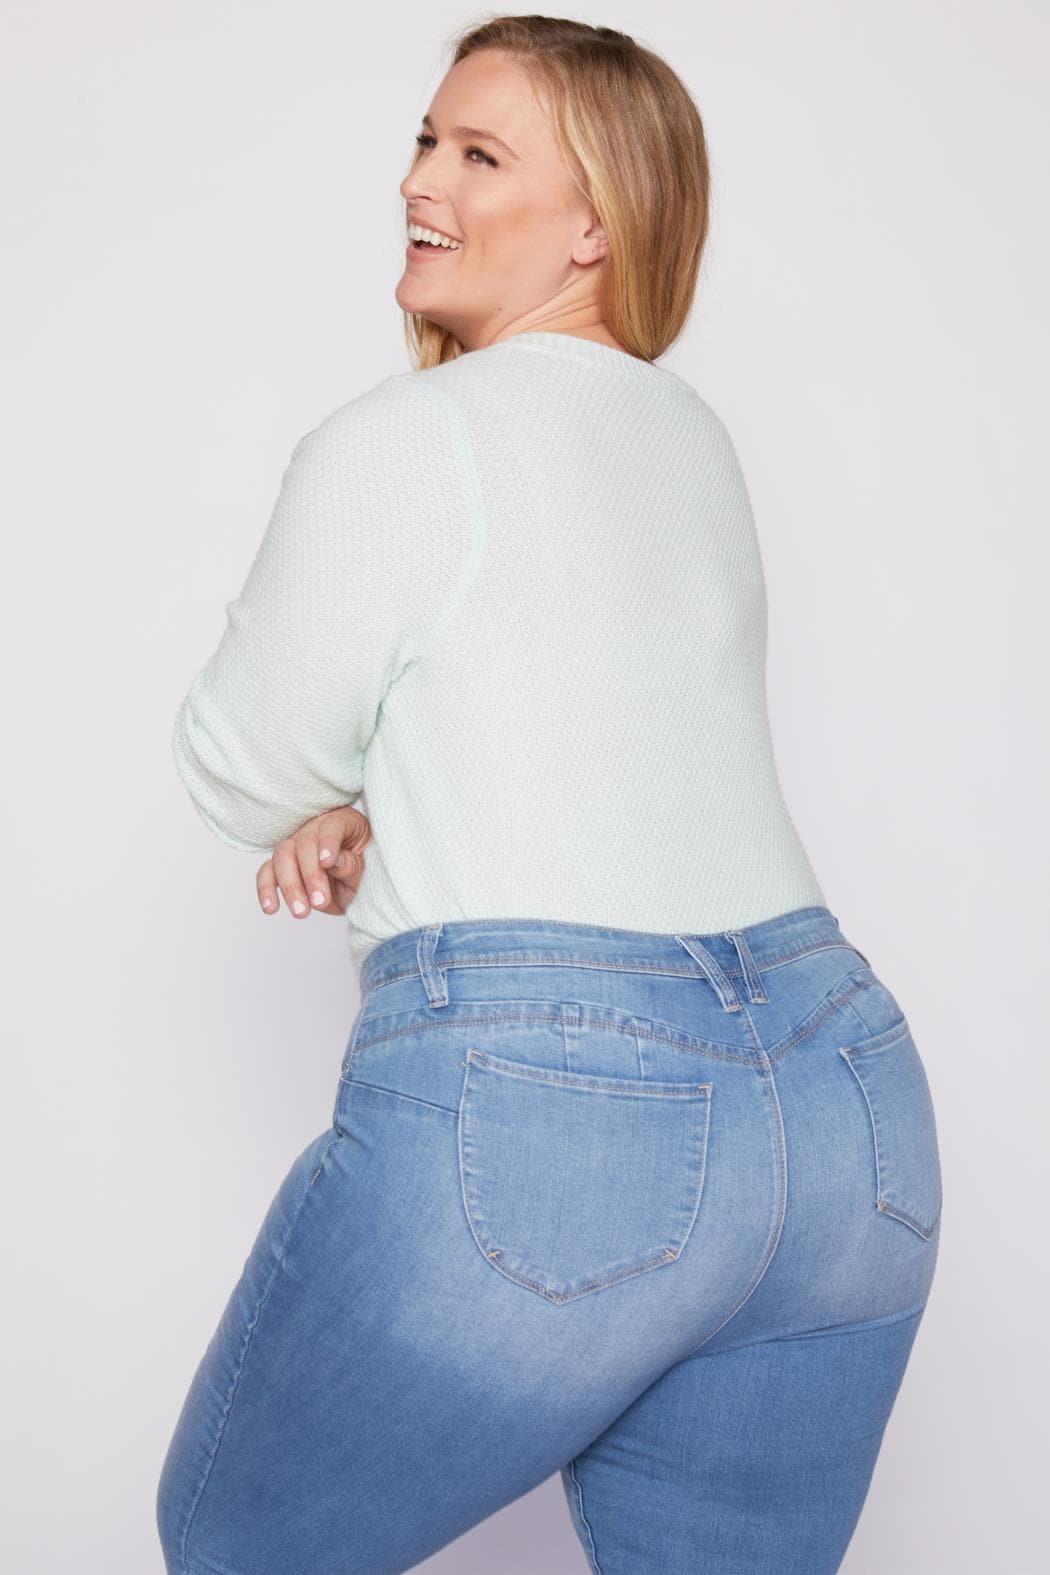 Women Plus Size Wannabettabutt Skinny Jeans Xp998780